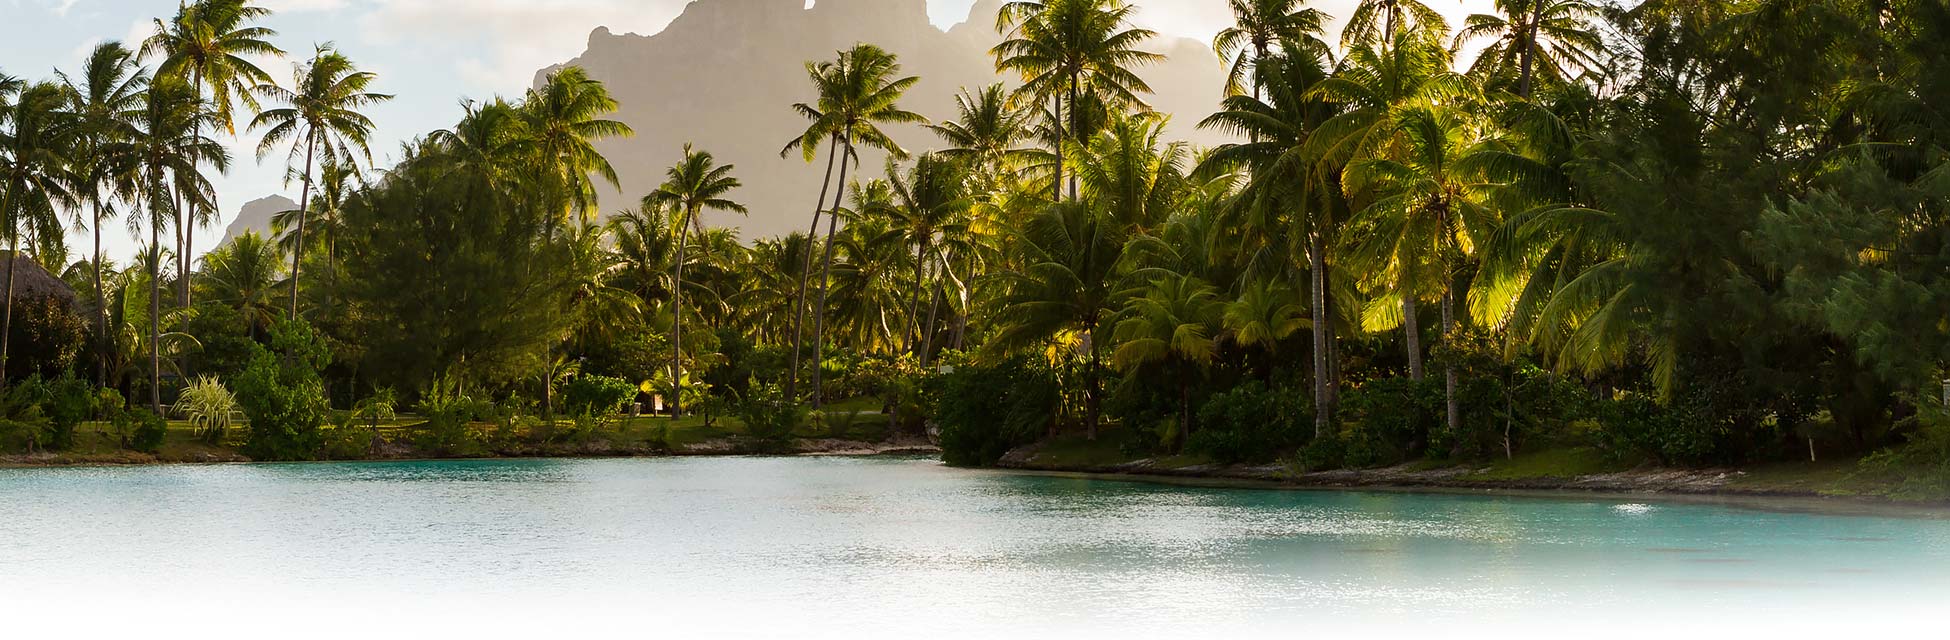 frans-polynesie-bora-bora-tahiti-moorea-palmen.jpg